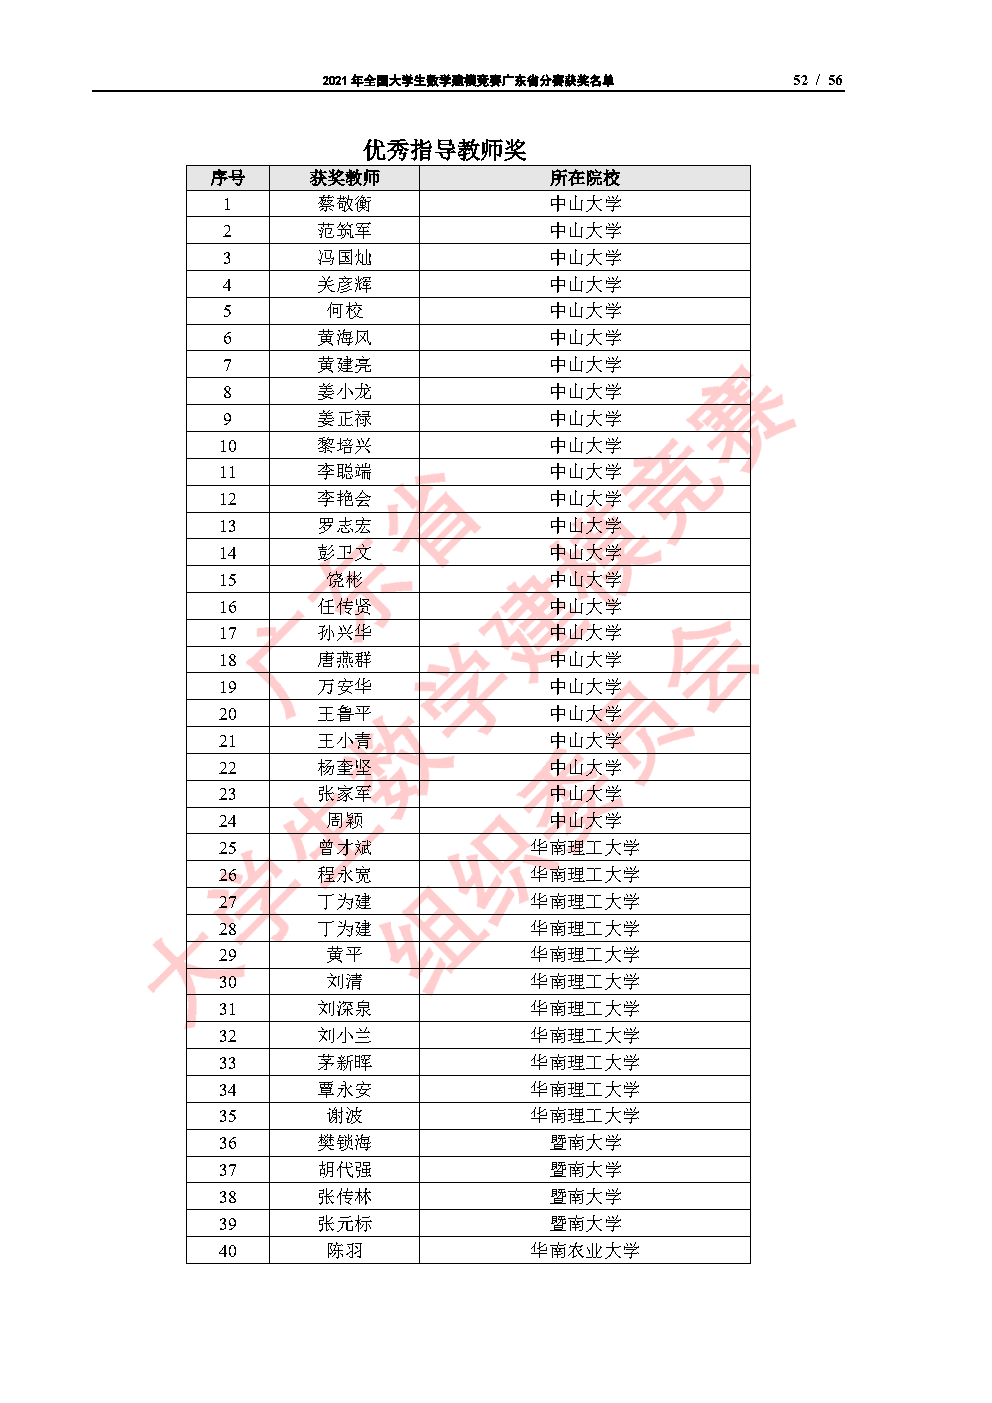 2021年全国大学生数学建模竞赛广东省分赛获奖名单_Page52.png